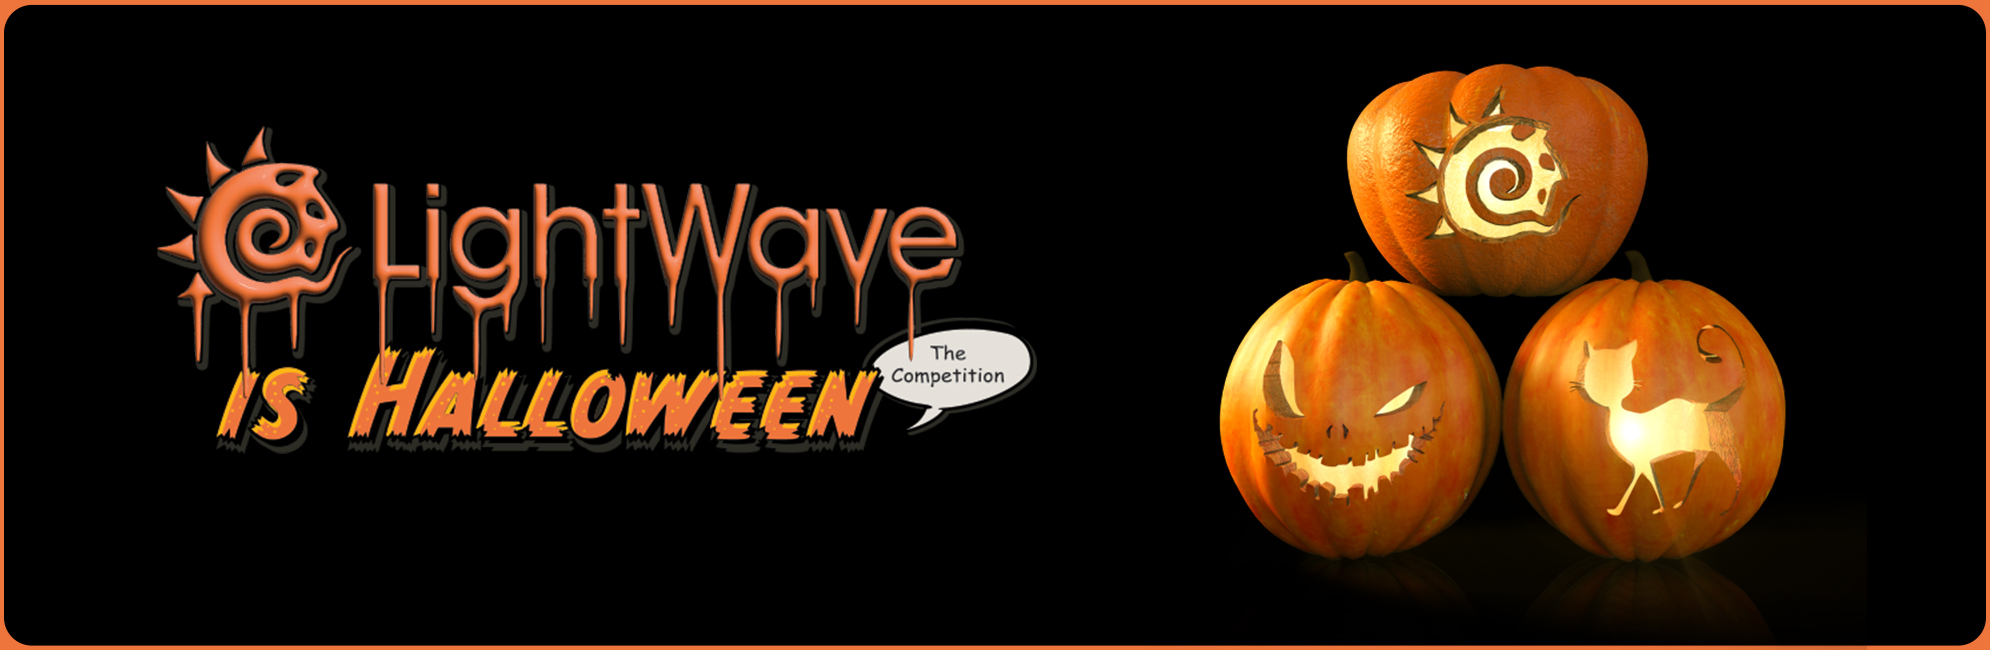 Nome: LightWave is Halloween  LightWave 3D Promo 20320918.jpg
Visite: 148
Dimensione: 387.4 KB